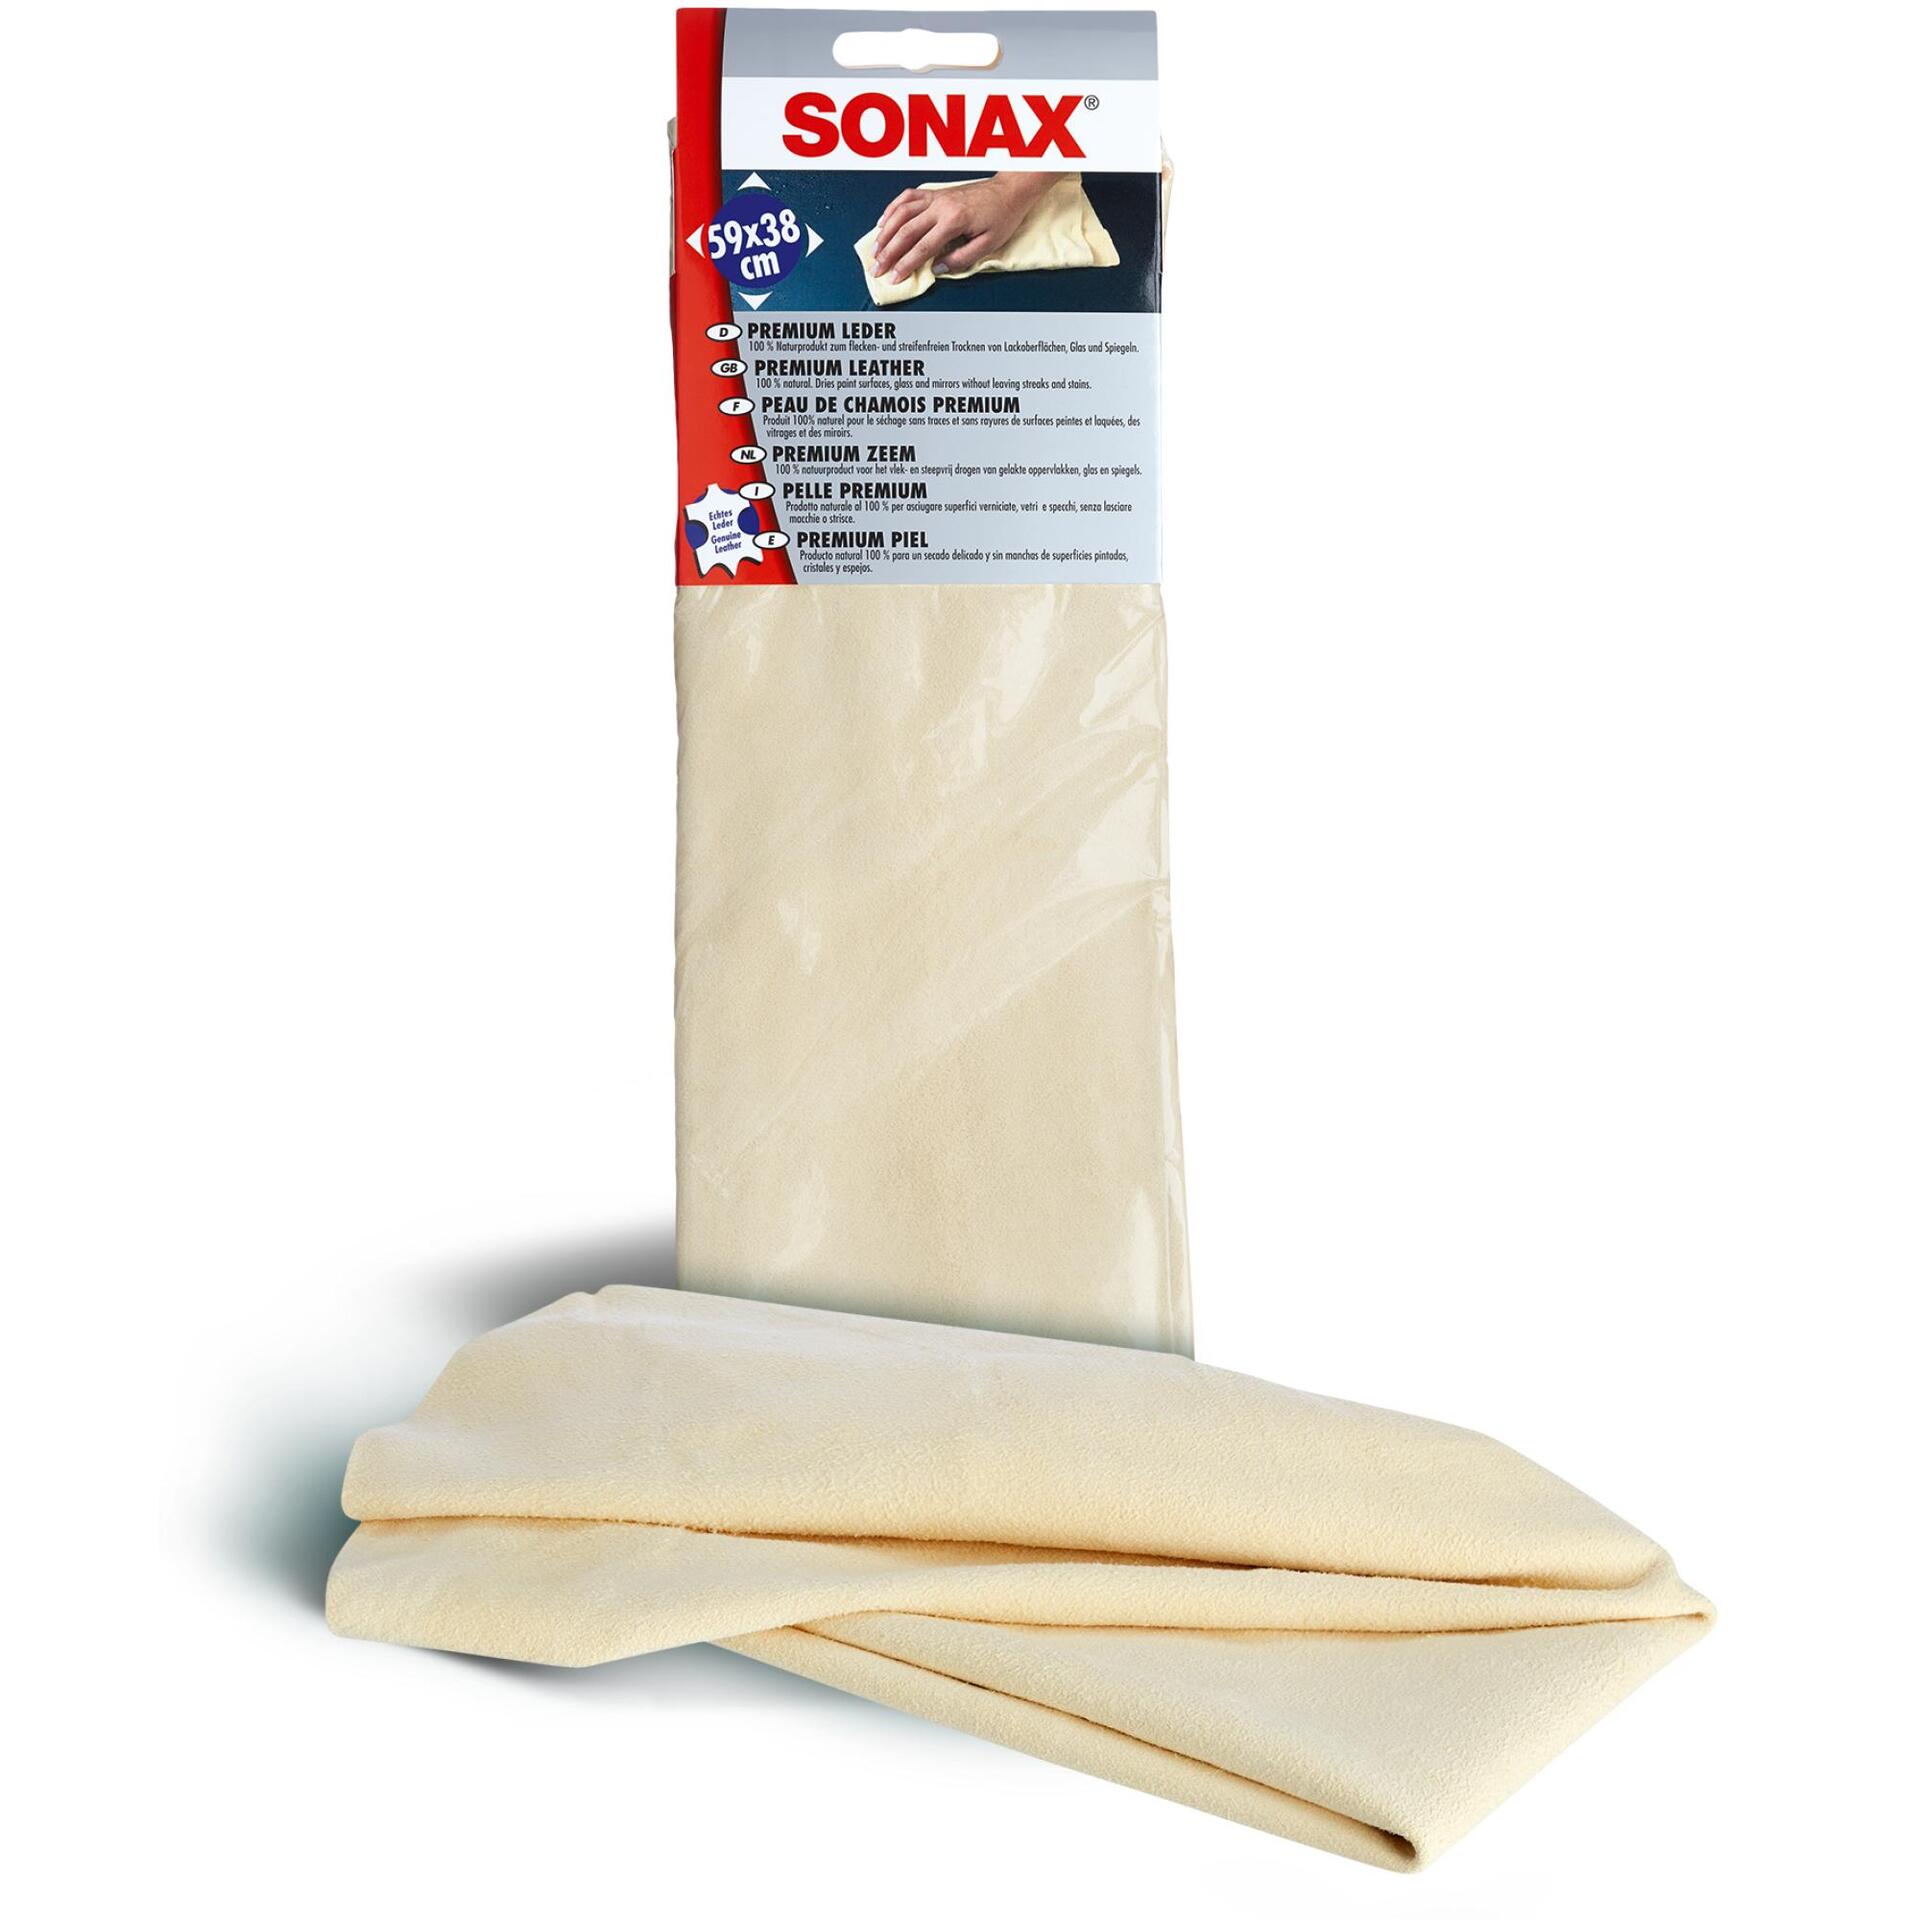 Sonax Premium Leder